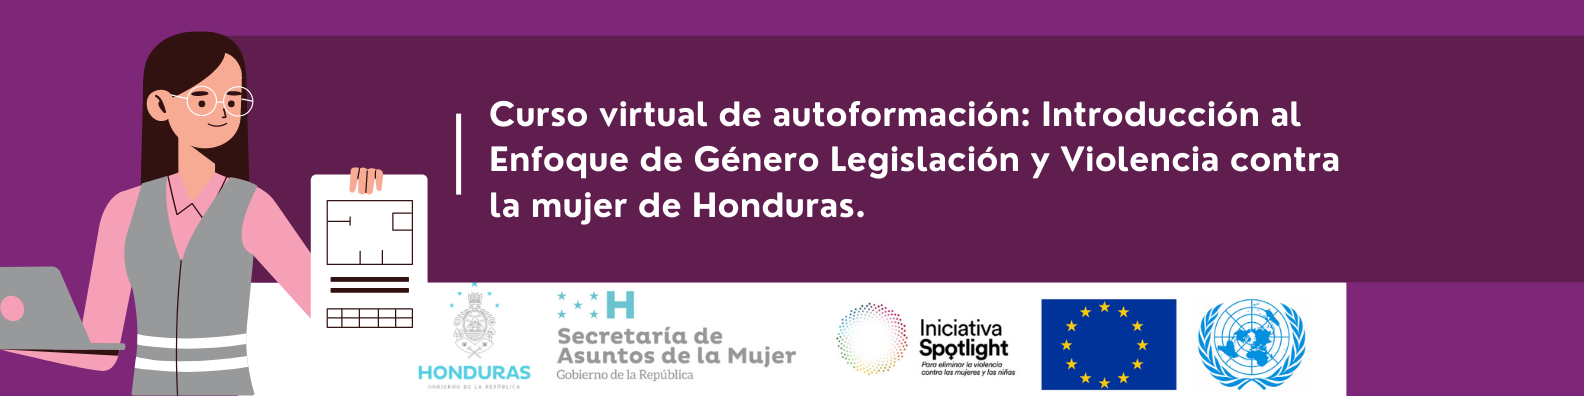 Introducción al enfoque de género, legislación y violencia contra la mujer en Honduras